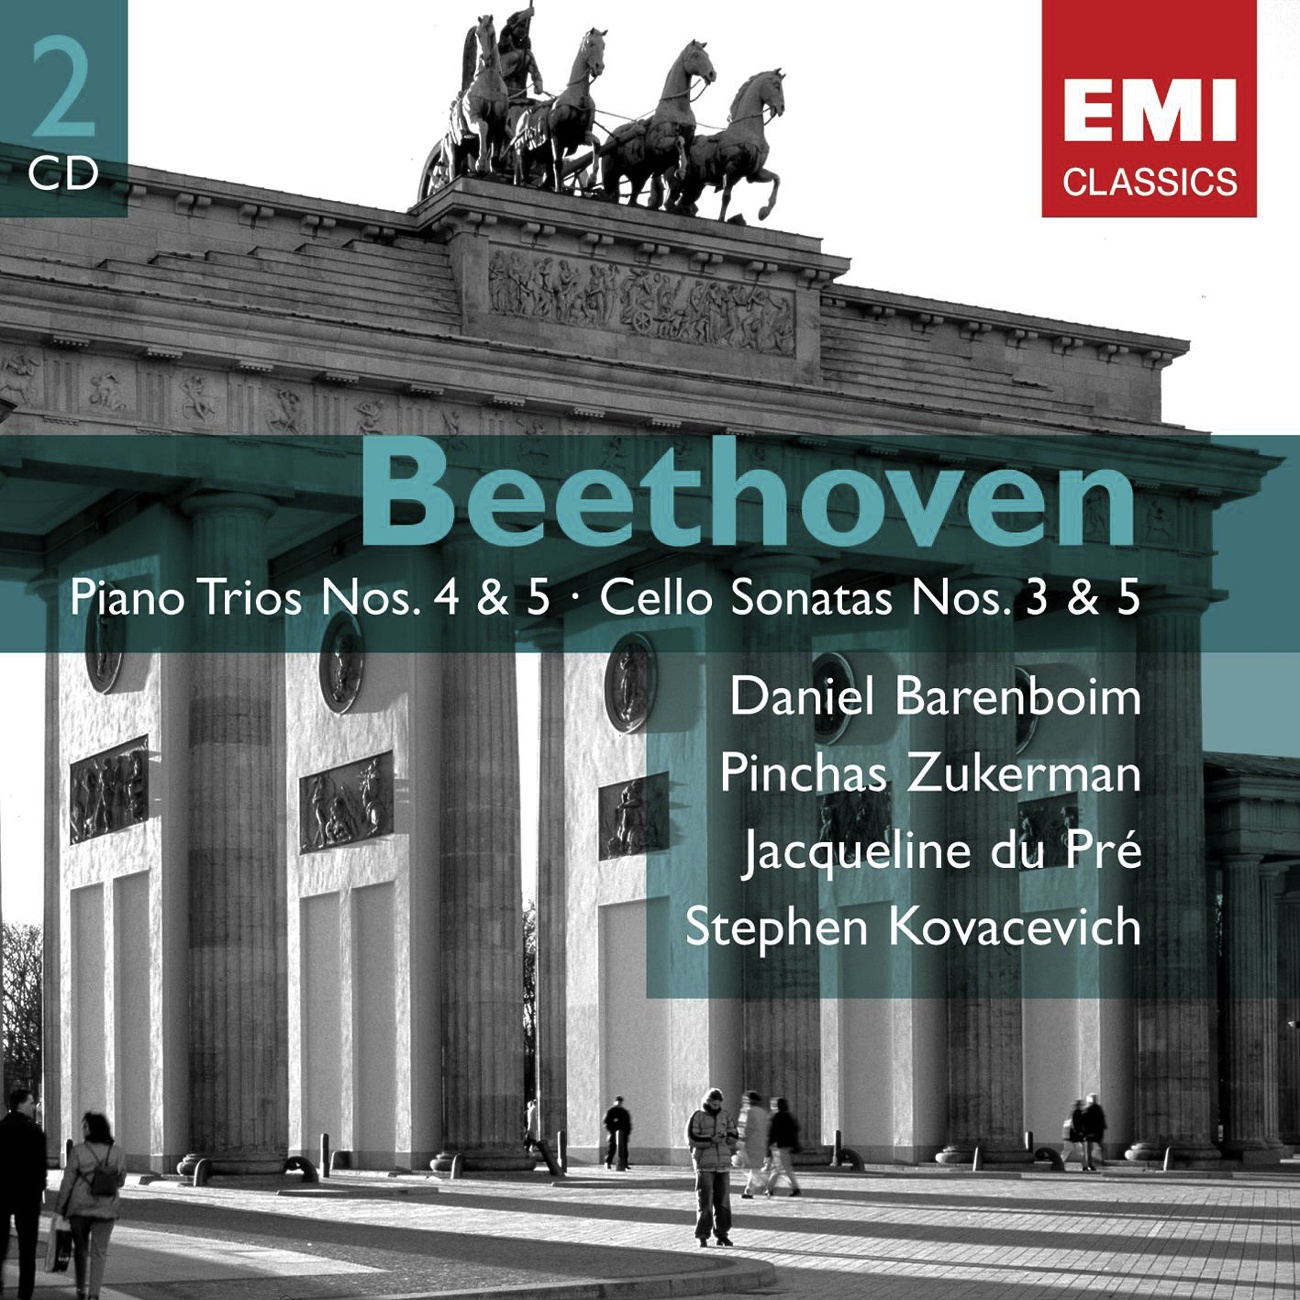 Piano Trio No. 5 in D major (Ghost) Op. 70 No .1 (2001 Digital Remaster): I. Allegro vivace e con brio